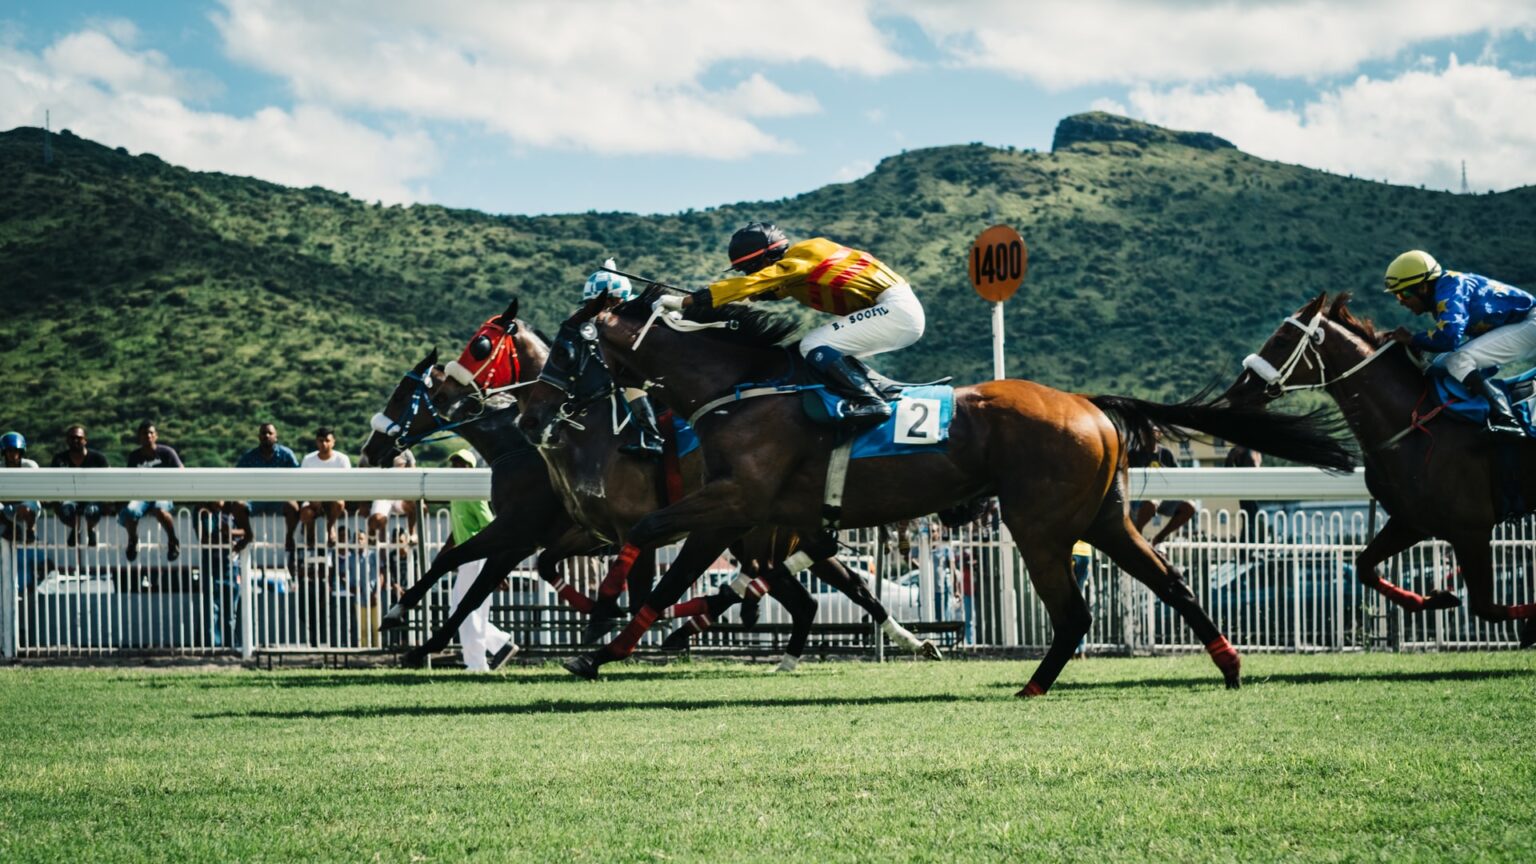 zed horse racing